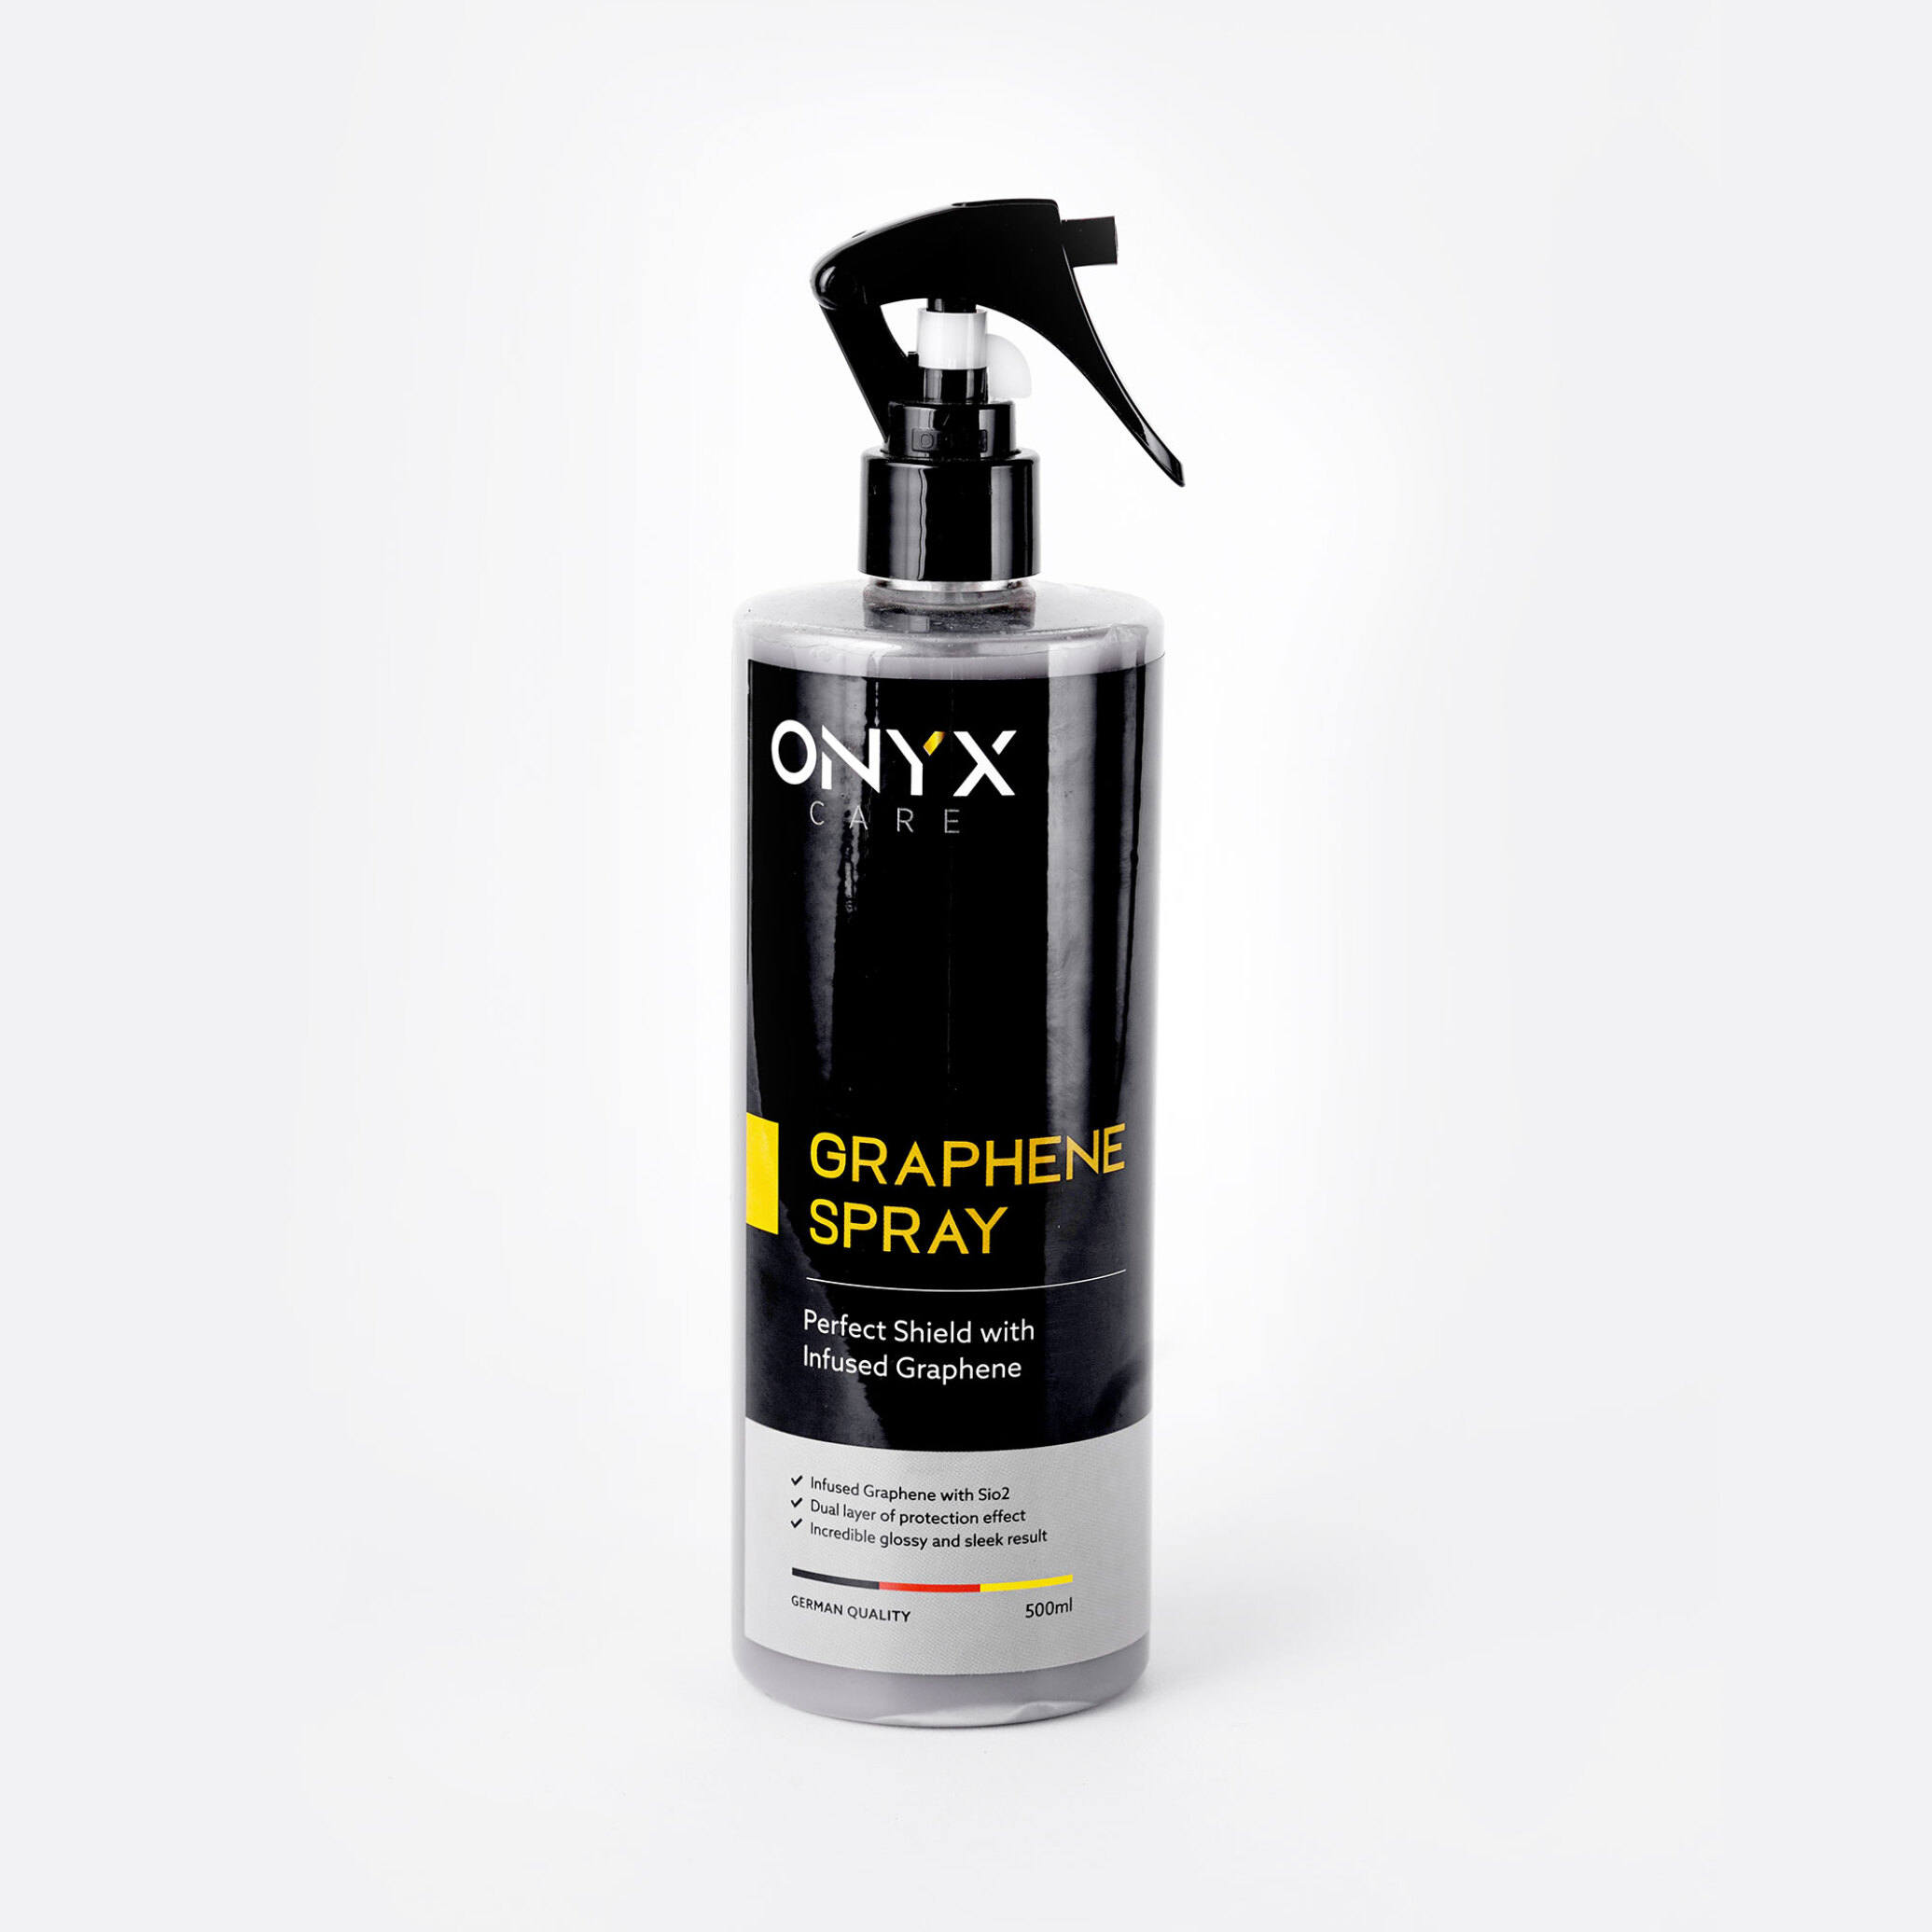  اسپری پوشش سرامیک گرافین اونیکس Onyx Graphene Spray 